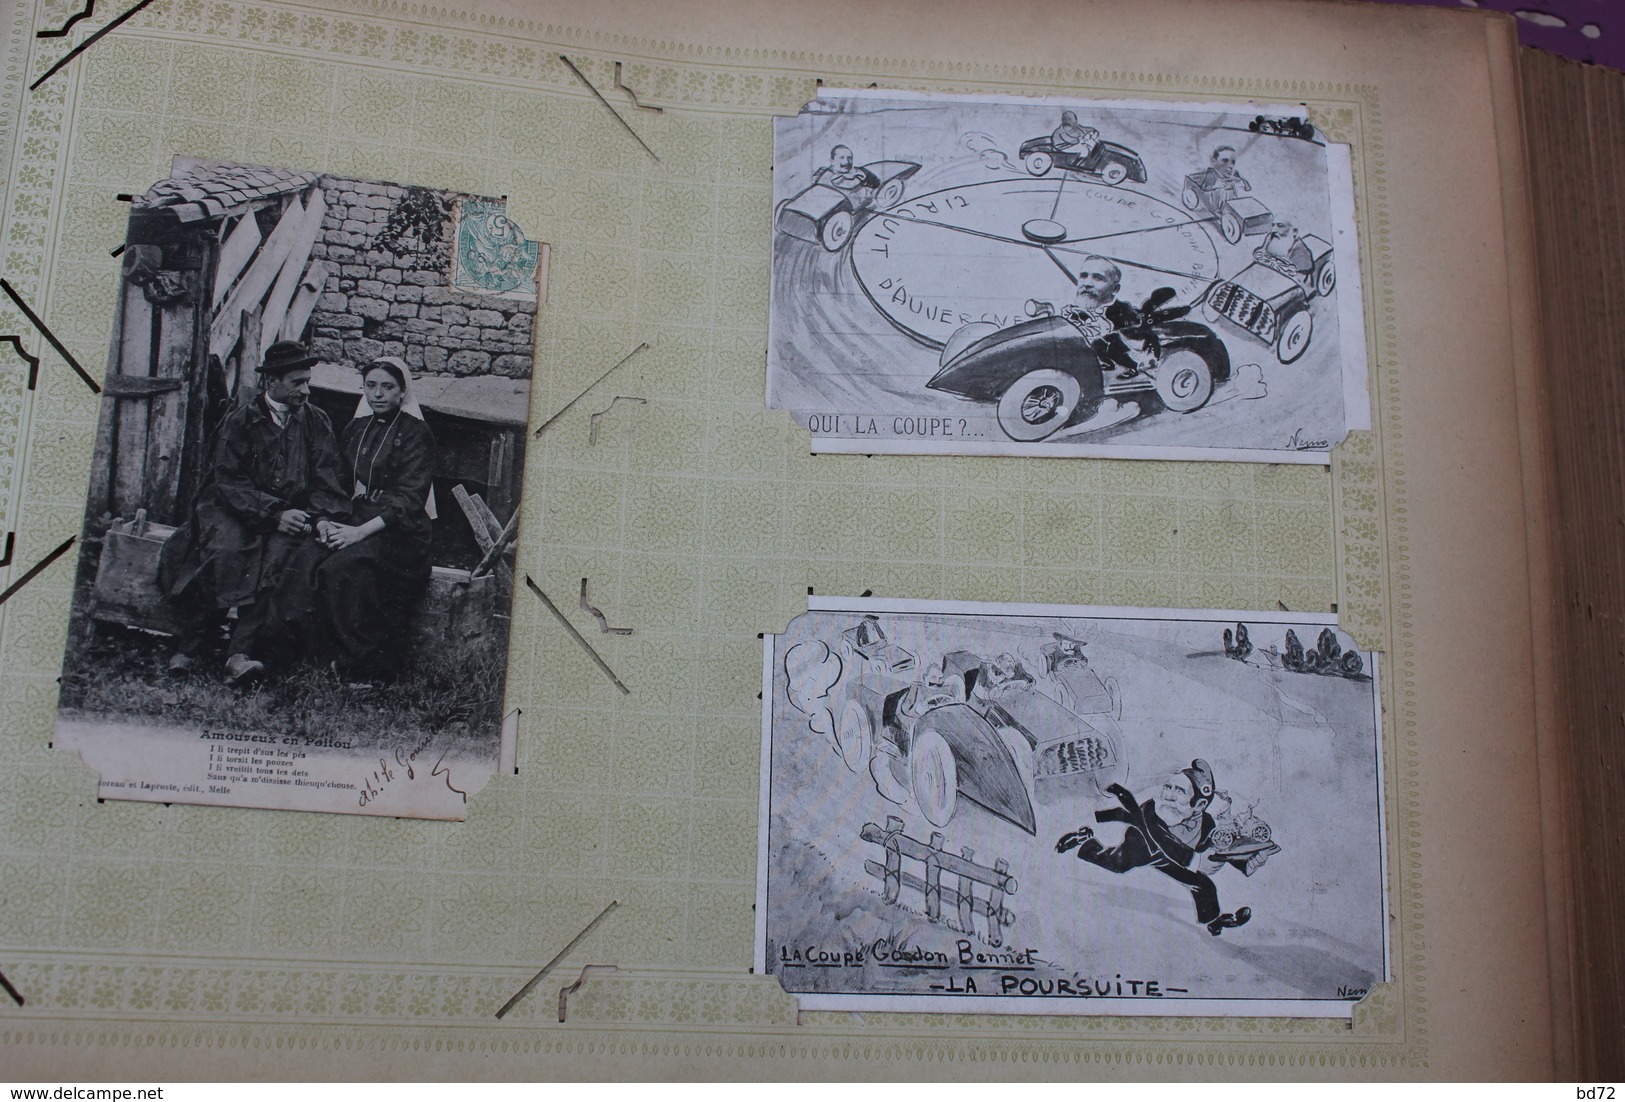 bel album de 325 cartes postales anciennes